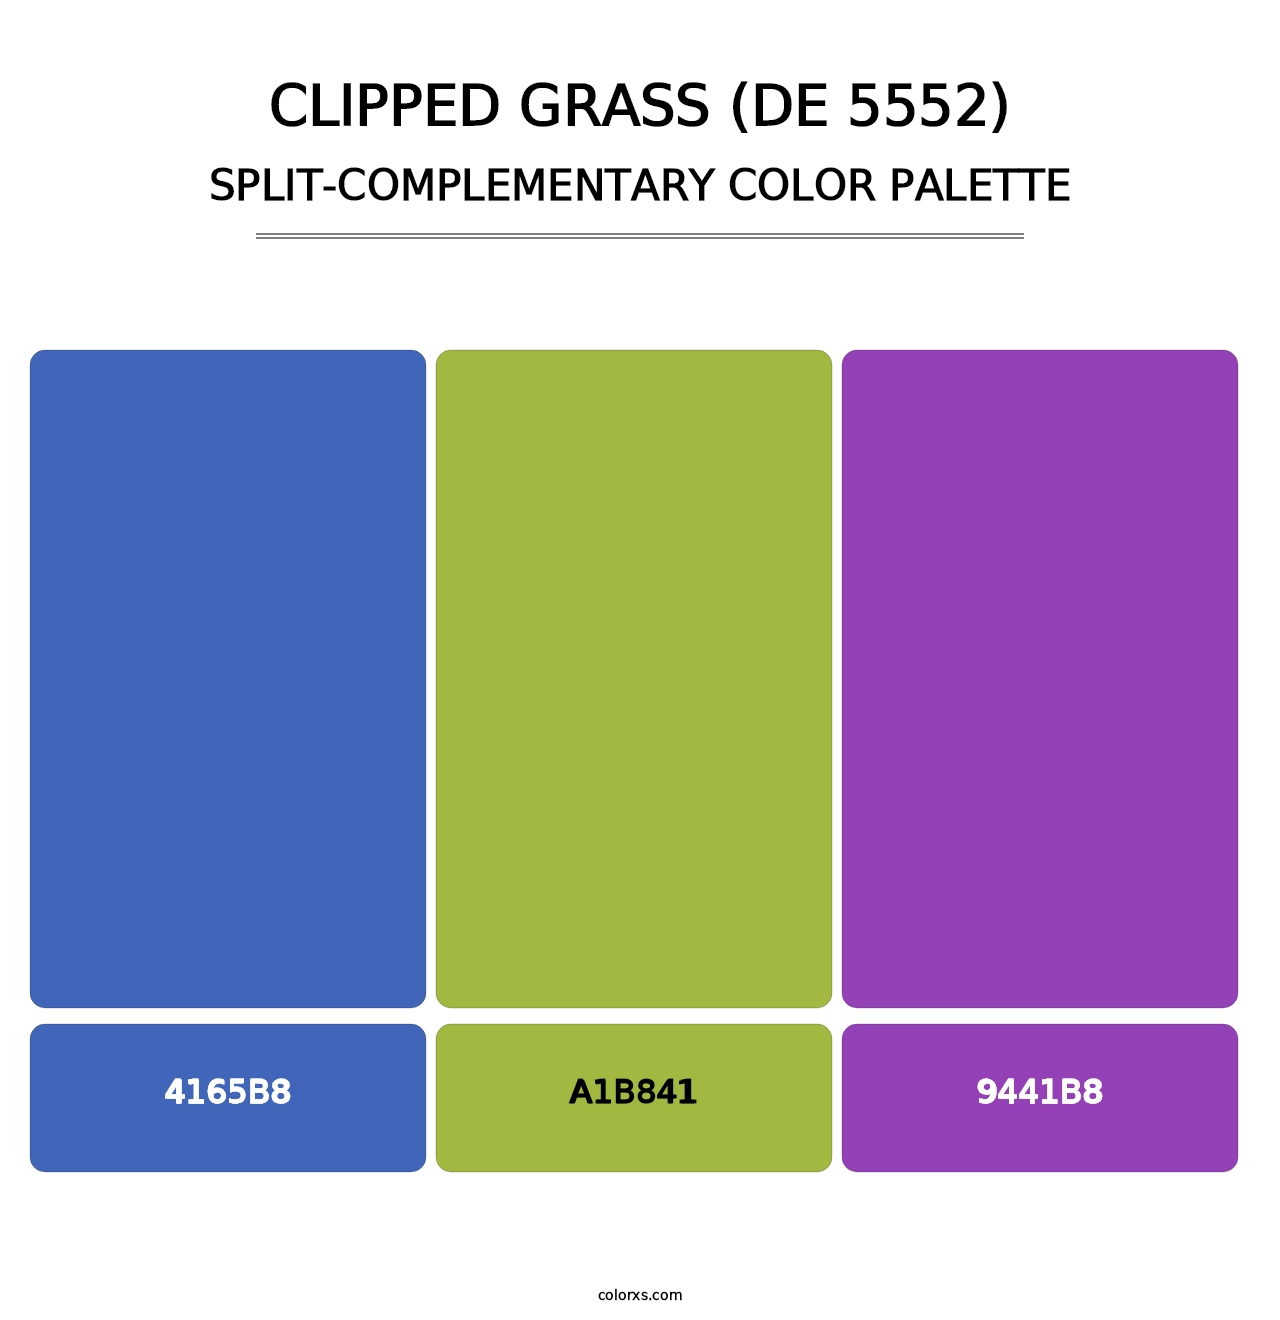 Clipped Grass (DE 5552) - Split-Complementary Color Palette